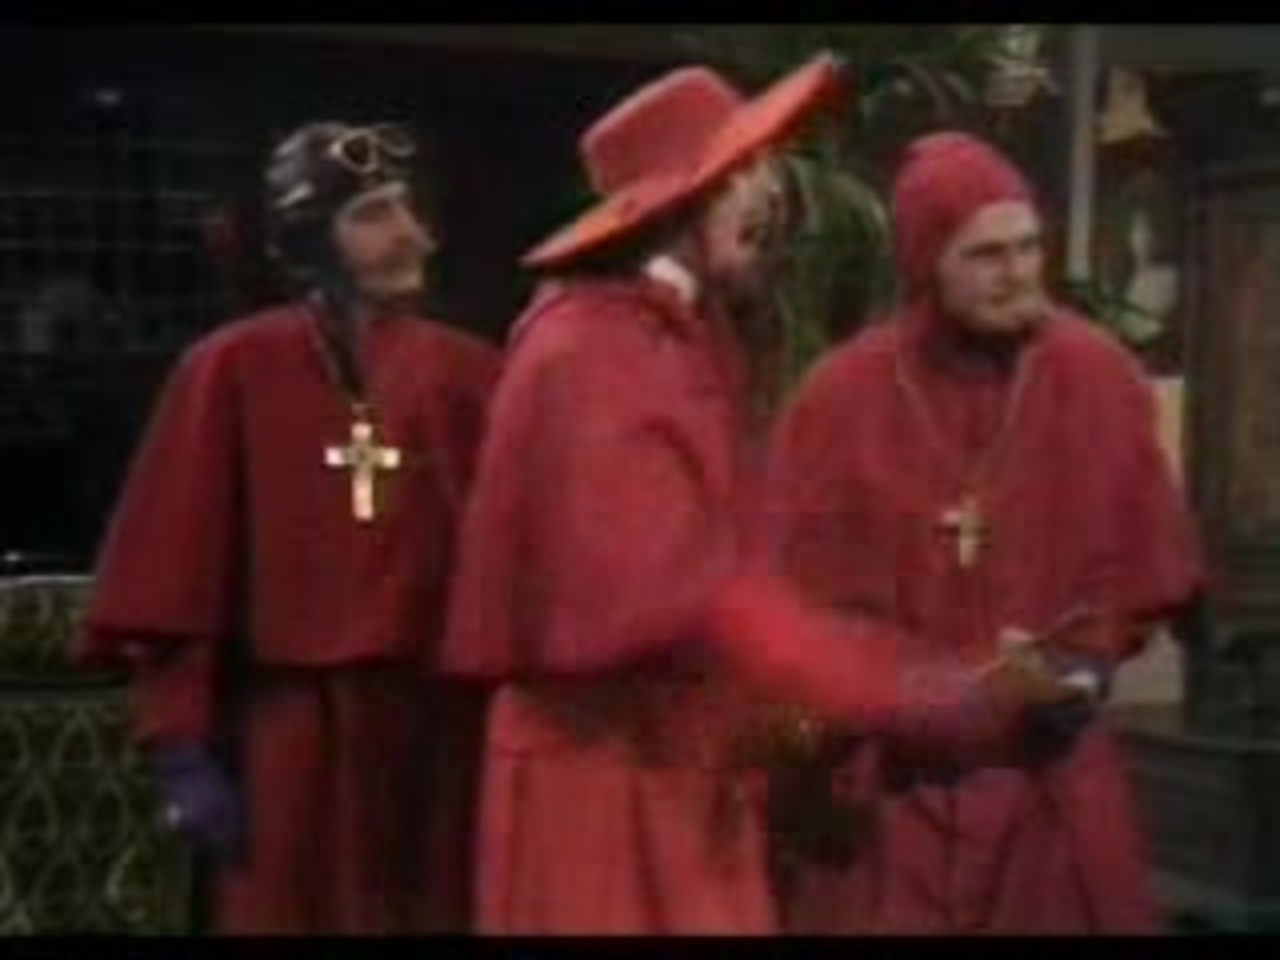 spanish-inquisition